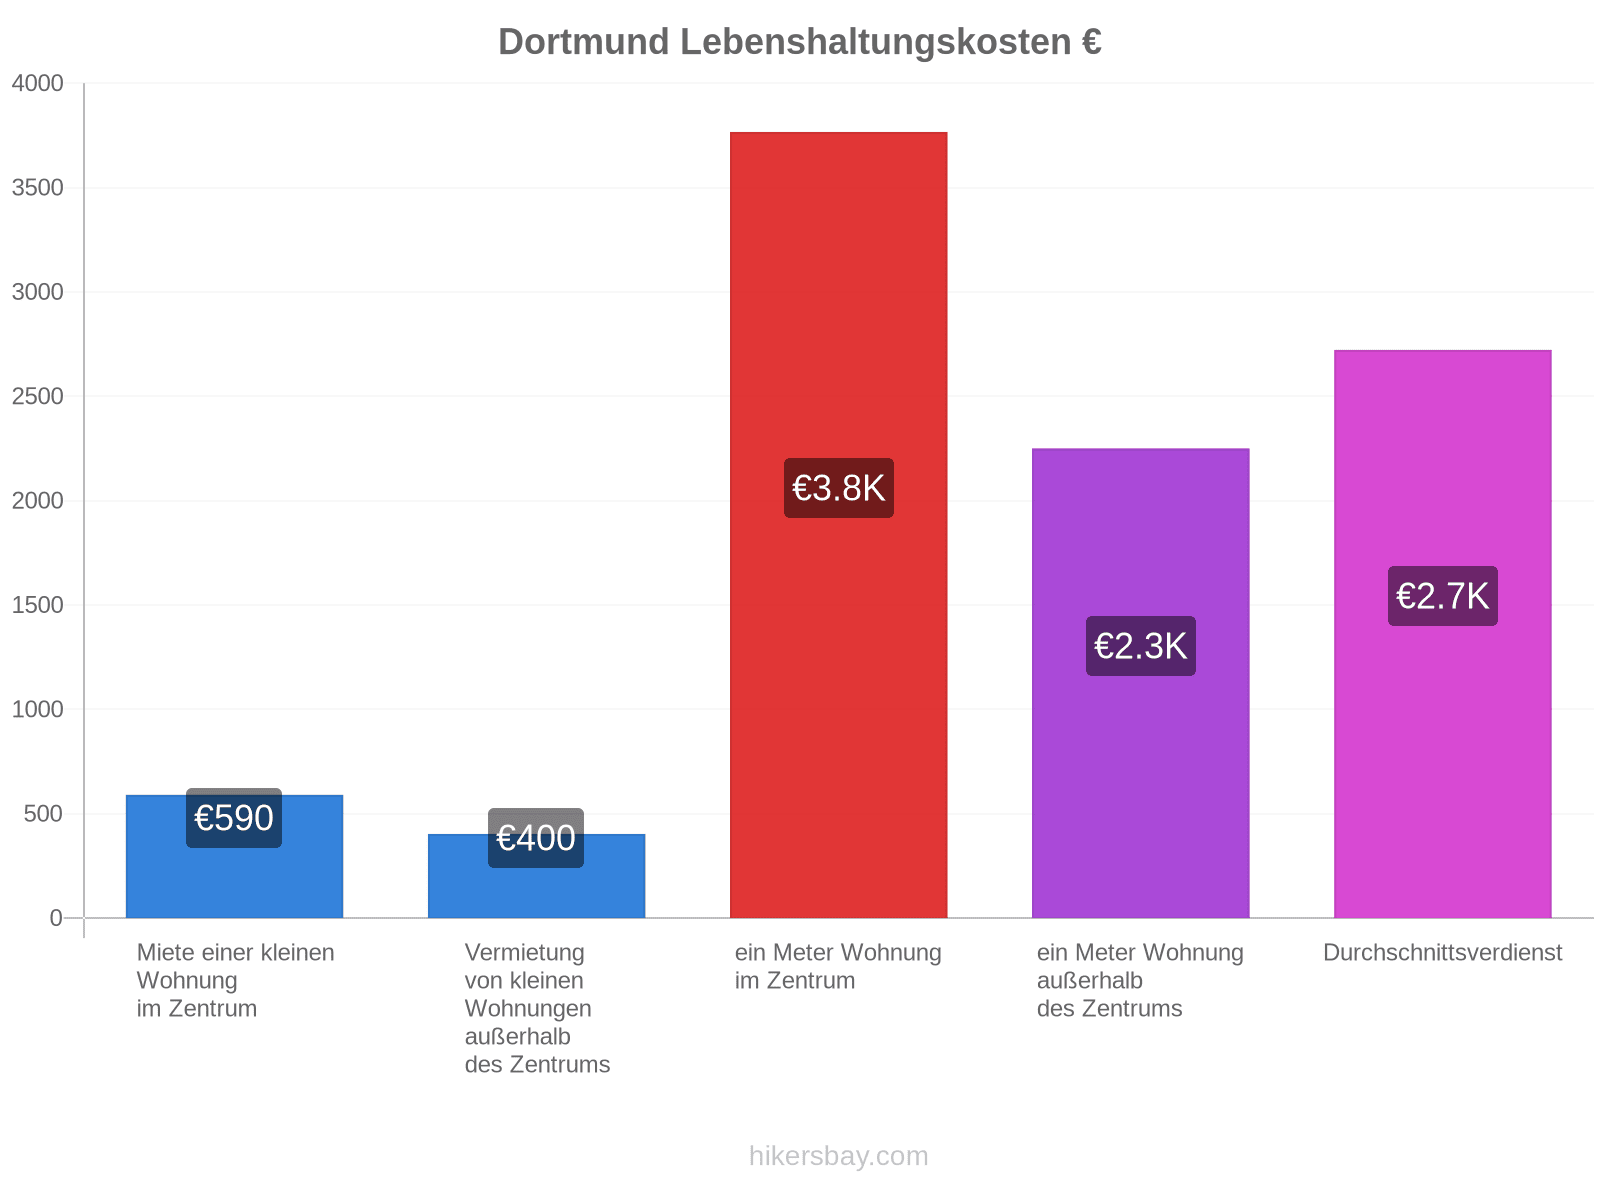 Dortmund Lebenshaltungskosten hikersbay.com